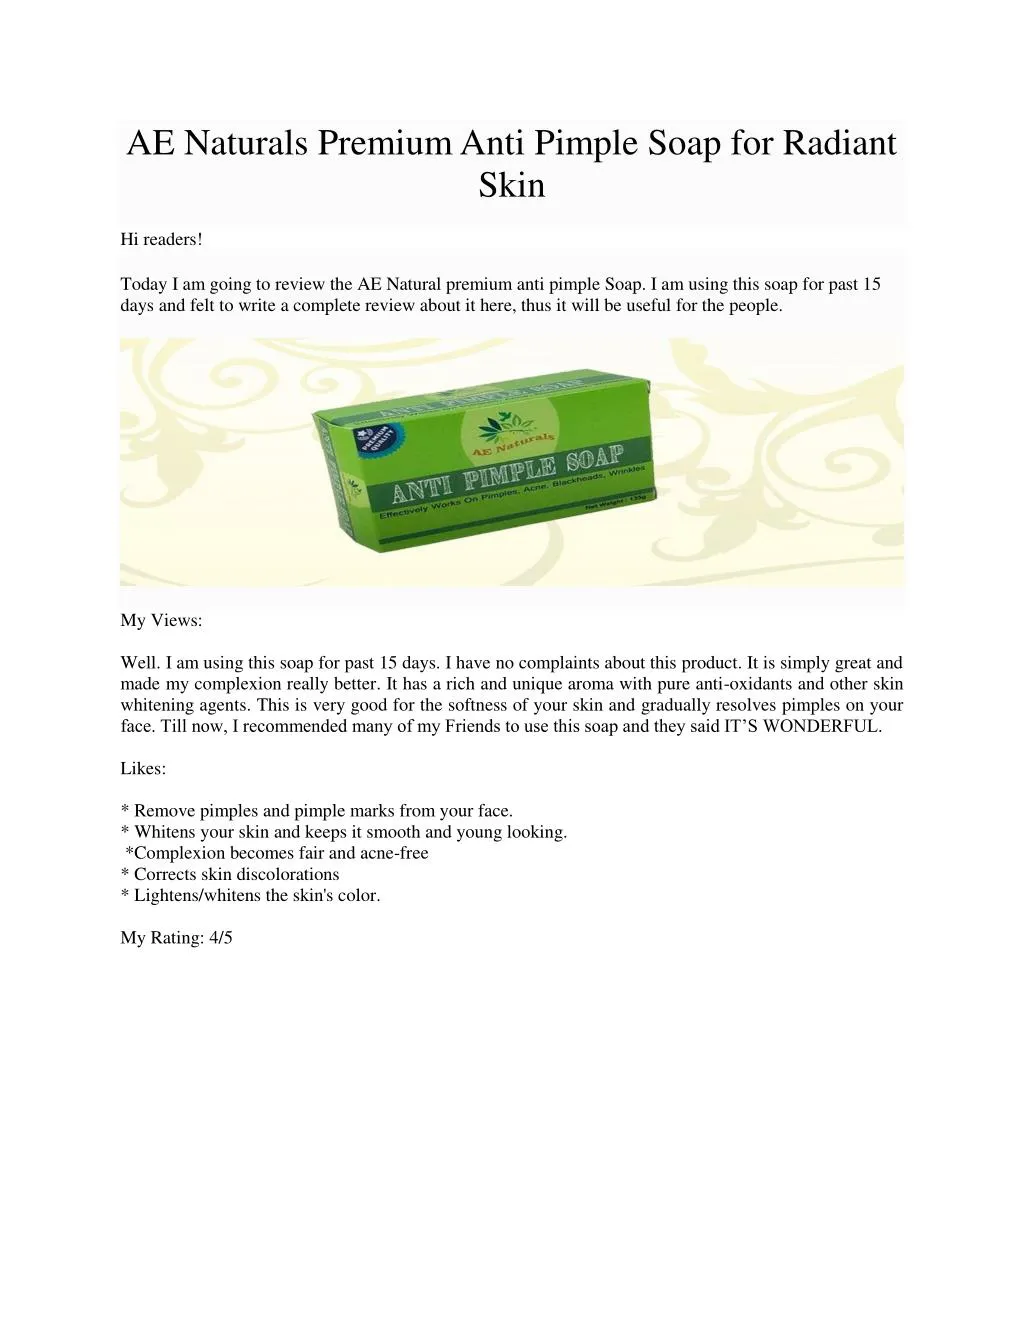 ae naturals premium anti pimple soap for radiant